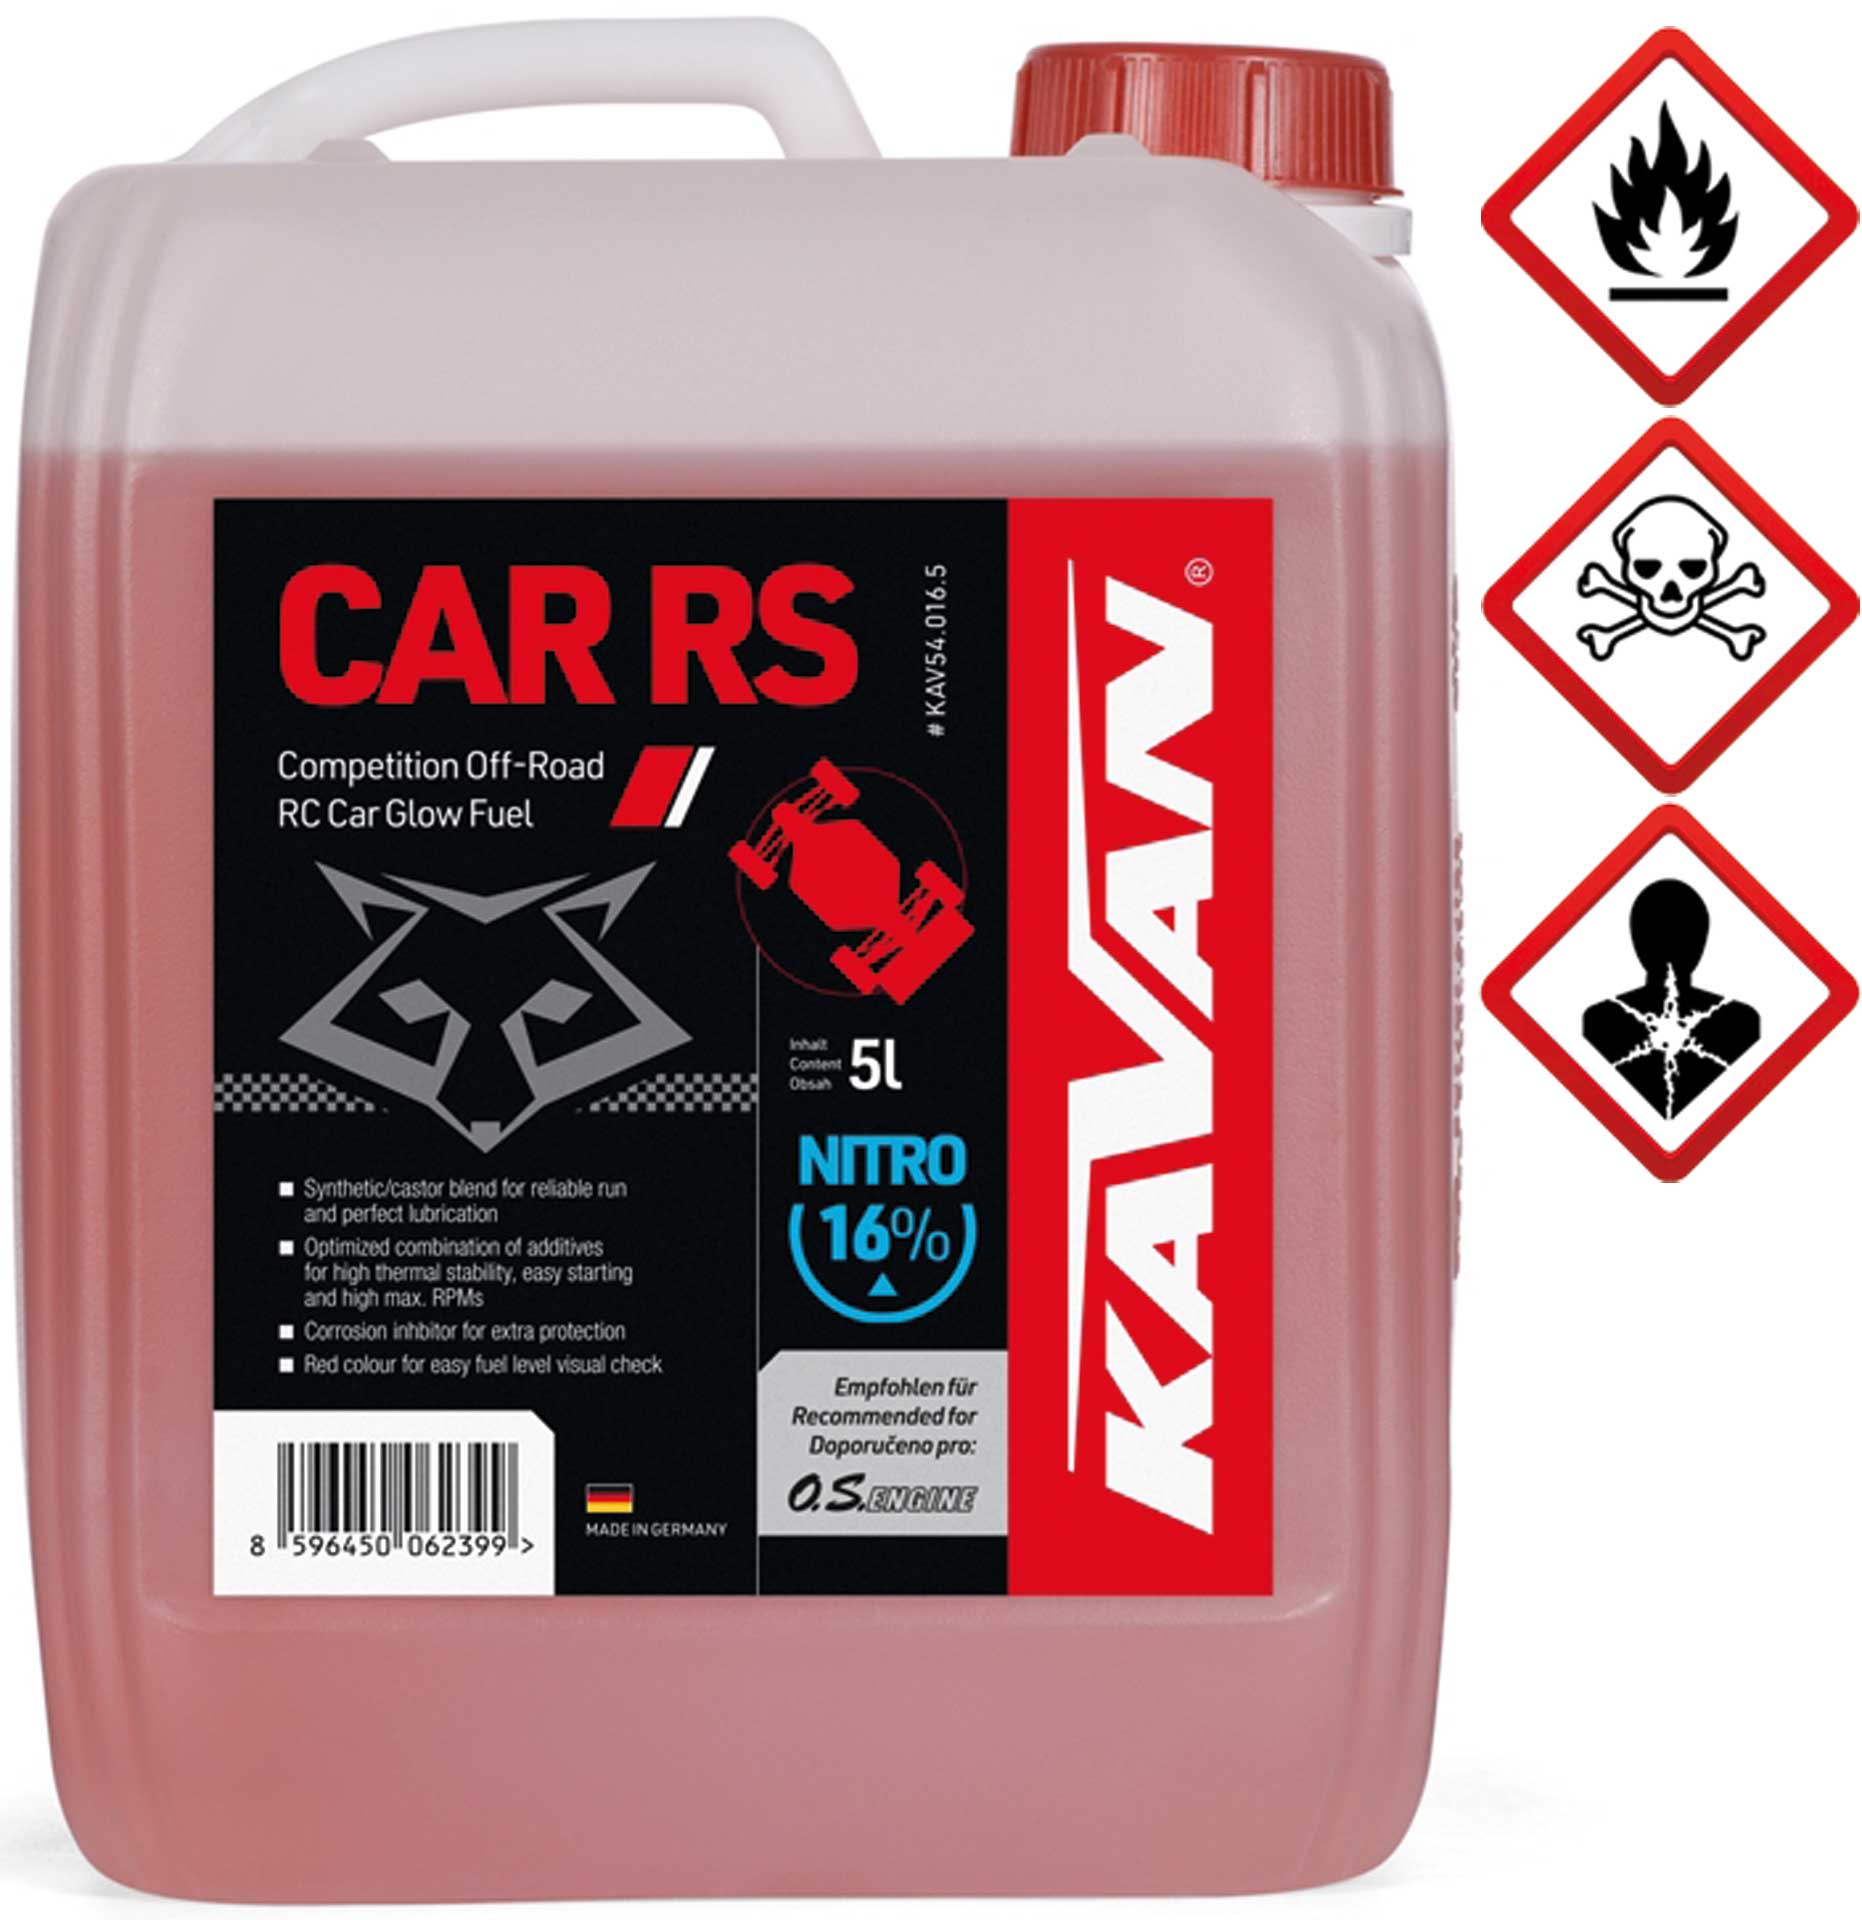 KAVAN Car RS 16% Off Road Nitro 5 litres Carburant, essence, carburant pour moteurs à allumage par incandescence